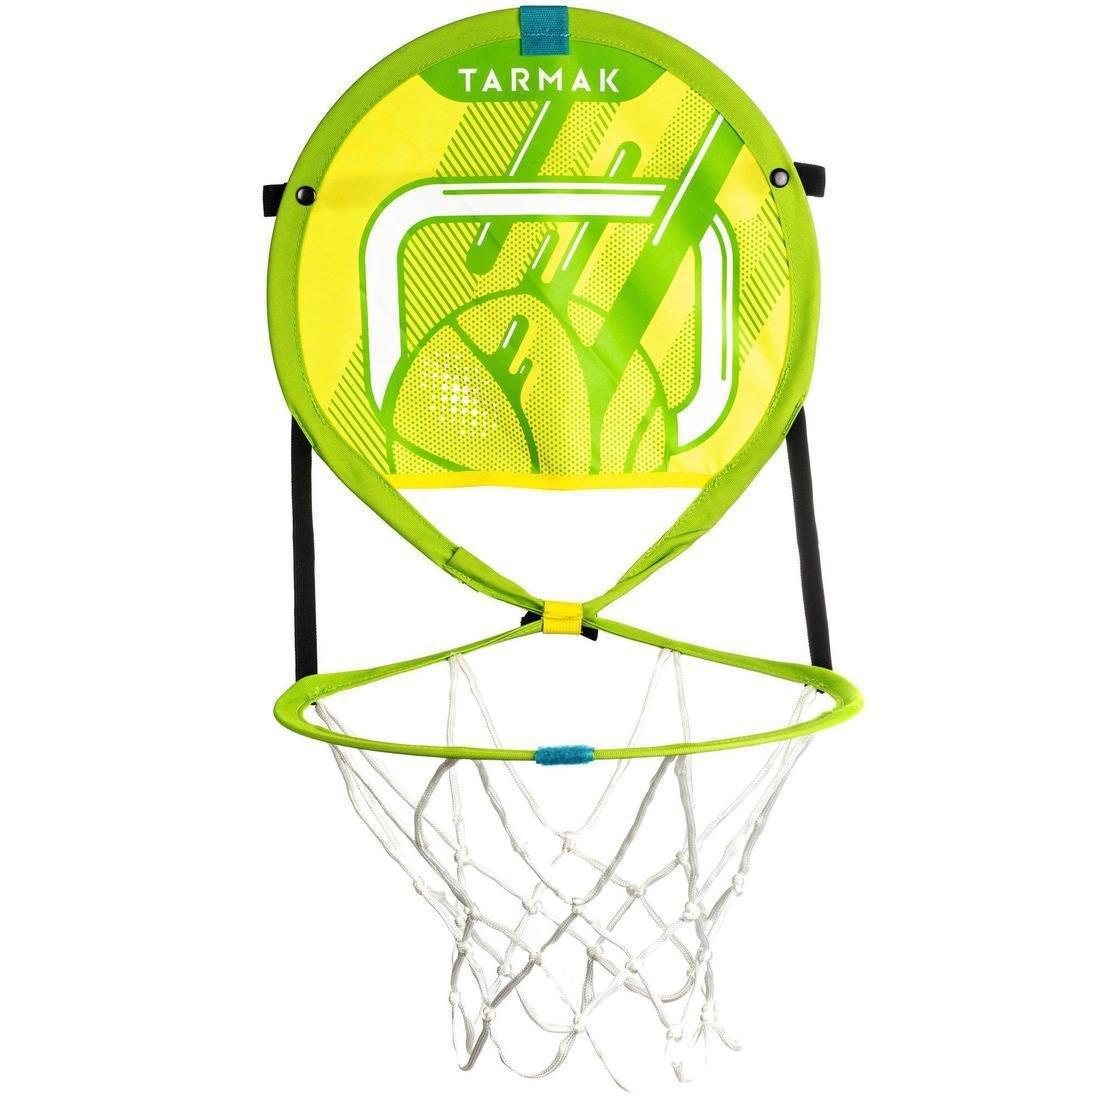 TARMAK - Hoop 100 Kids/Adult Portable Basketball Basket With Ball